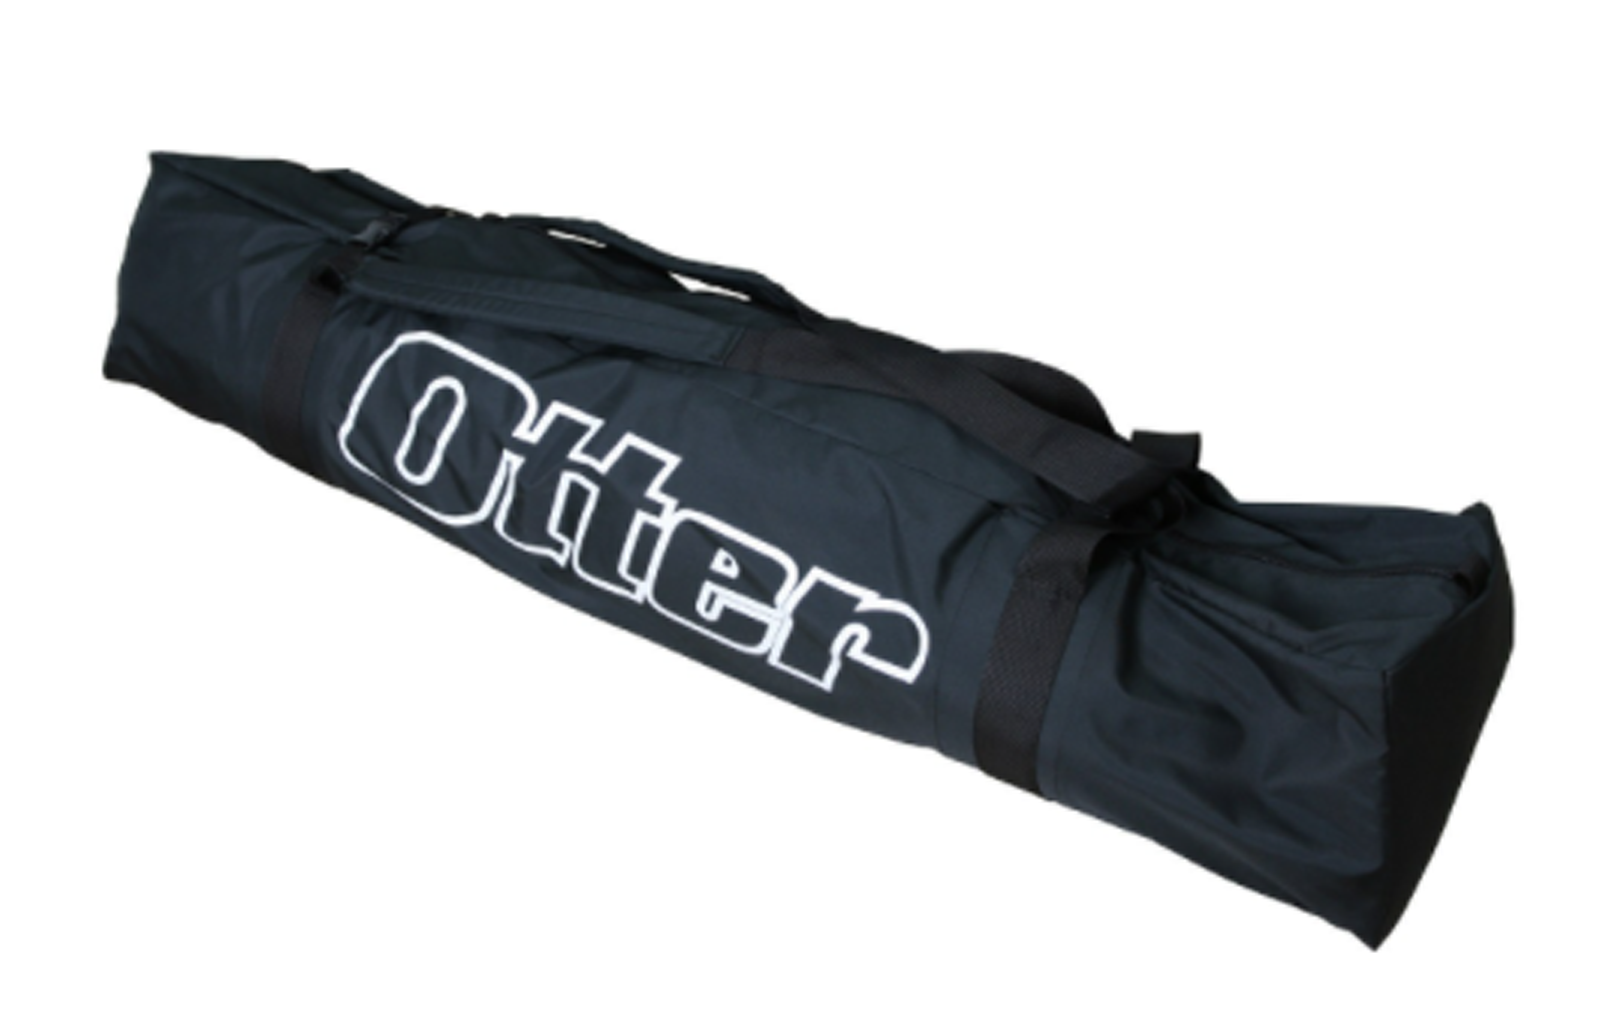 Otter Vortex Pro Cabin Thermal Pop-Up Shelter